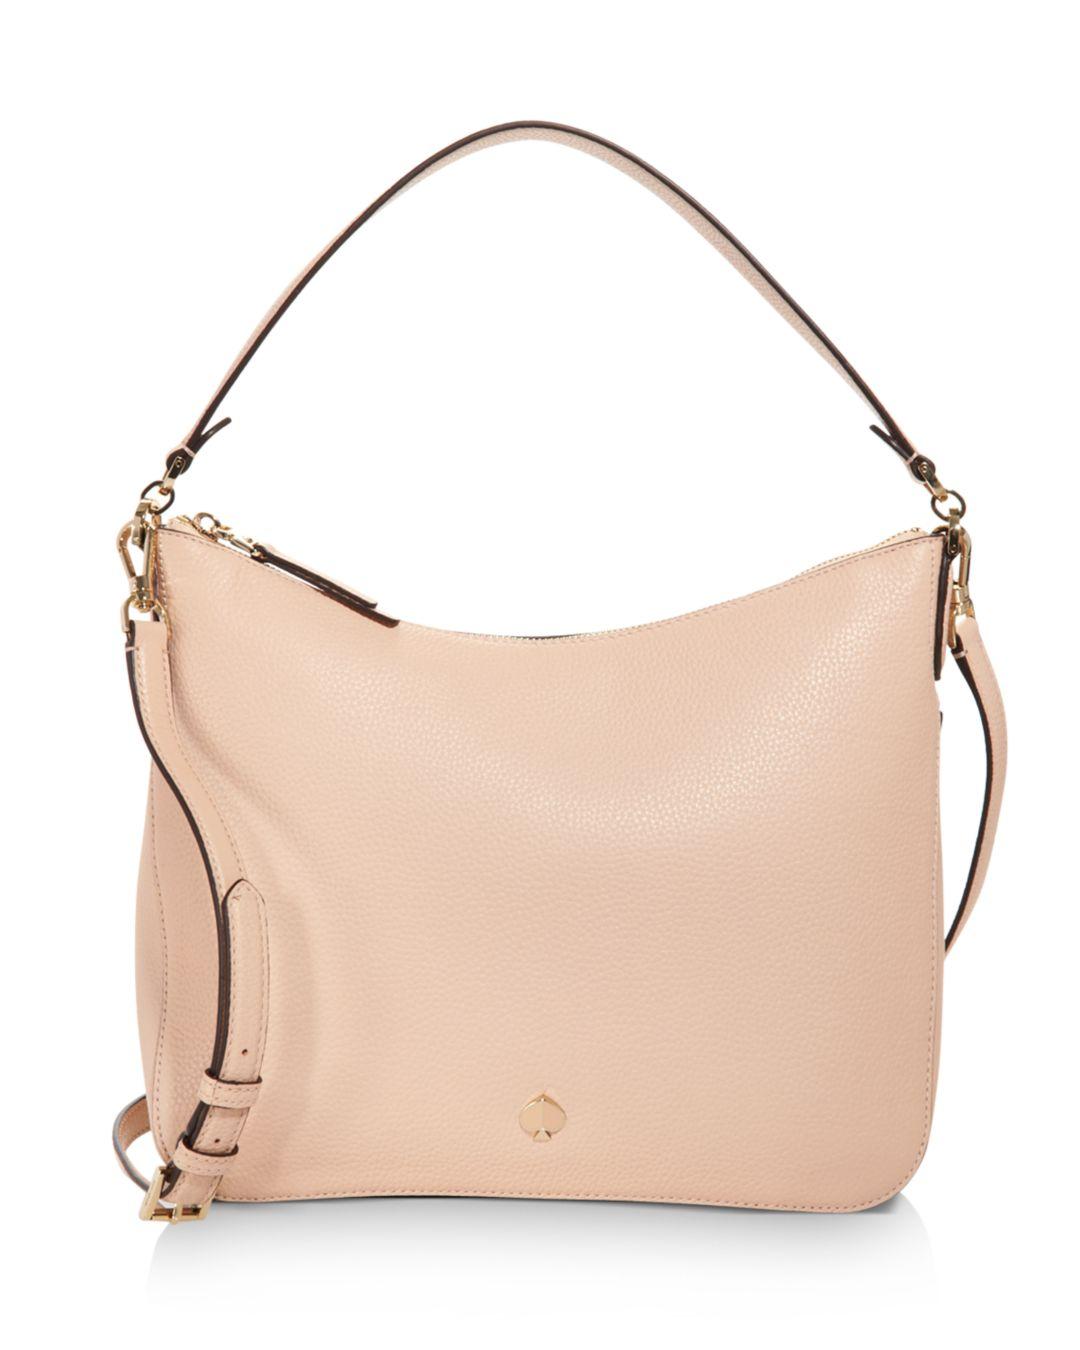 Kate Spade Medium Pebbled Leather Shoulder Bag in Blush (Pink) - Save ...